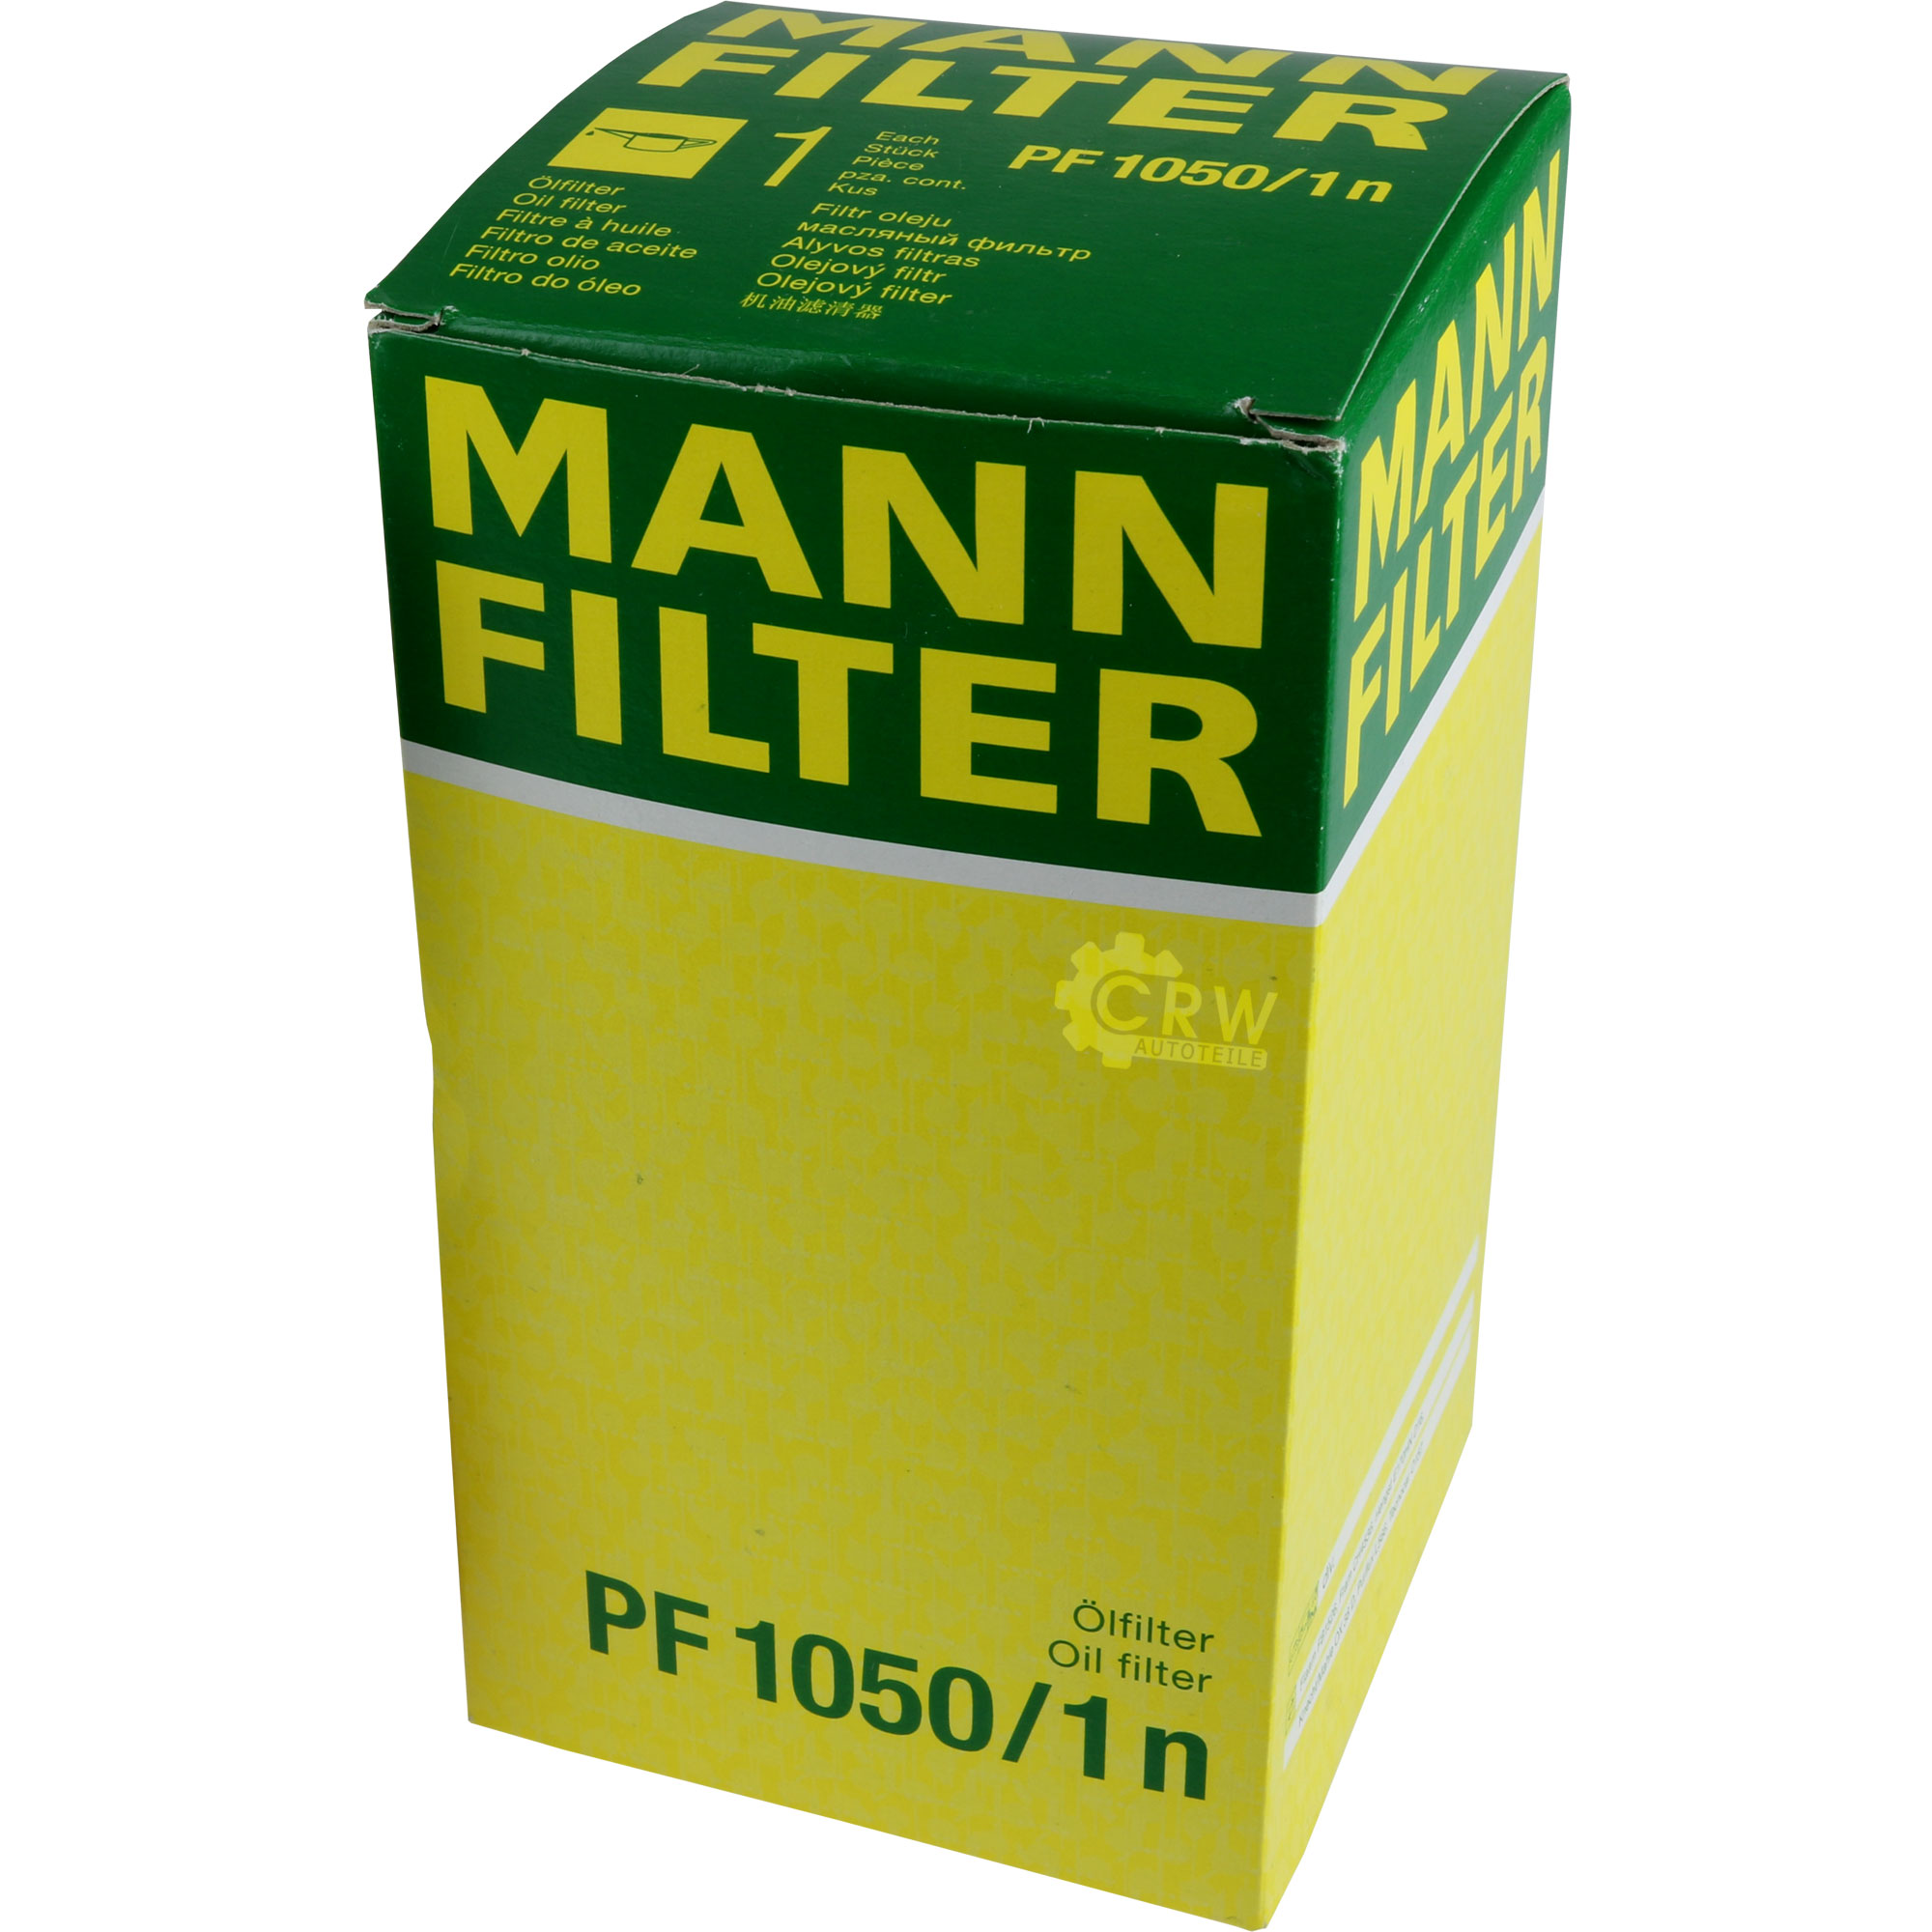 MANN-FILTER Ölfilter Oelfilter PF 1050/1 n Oil Filter